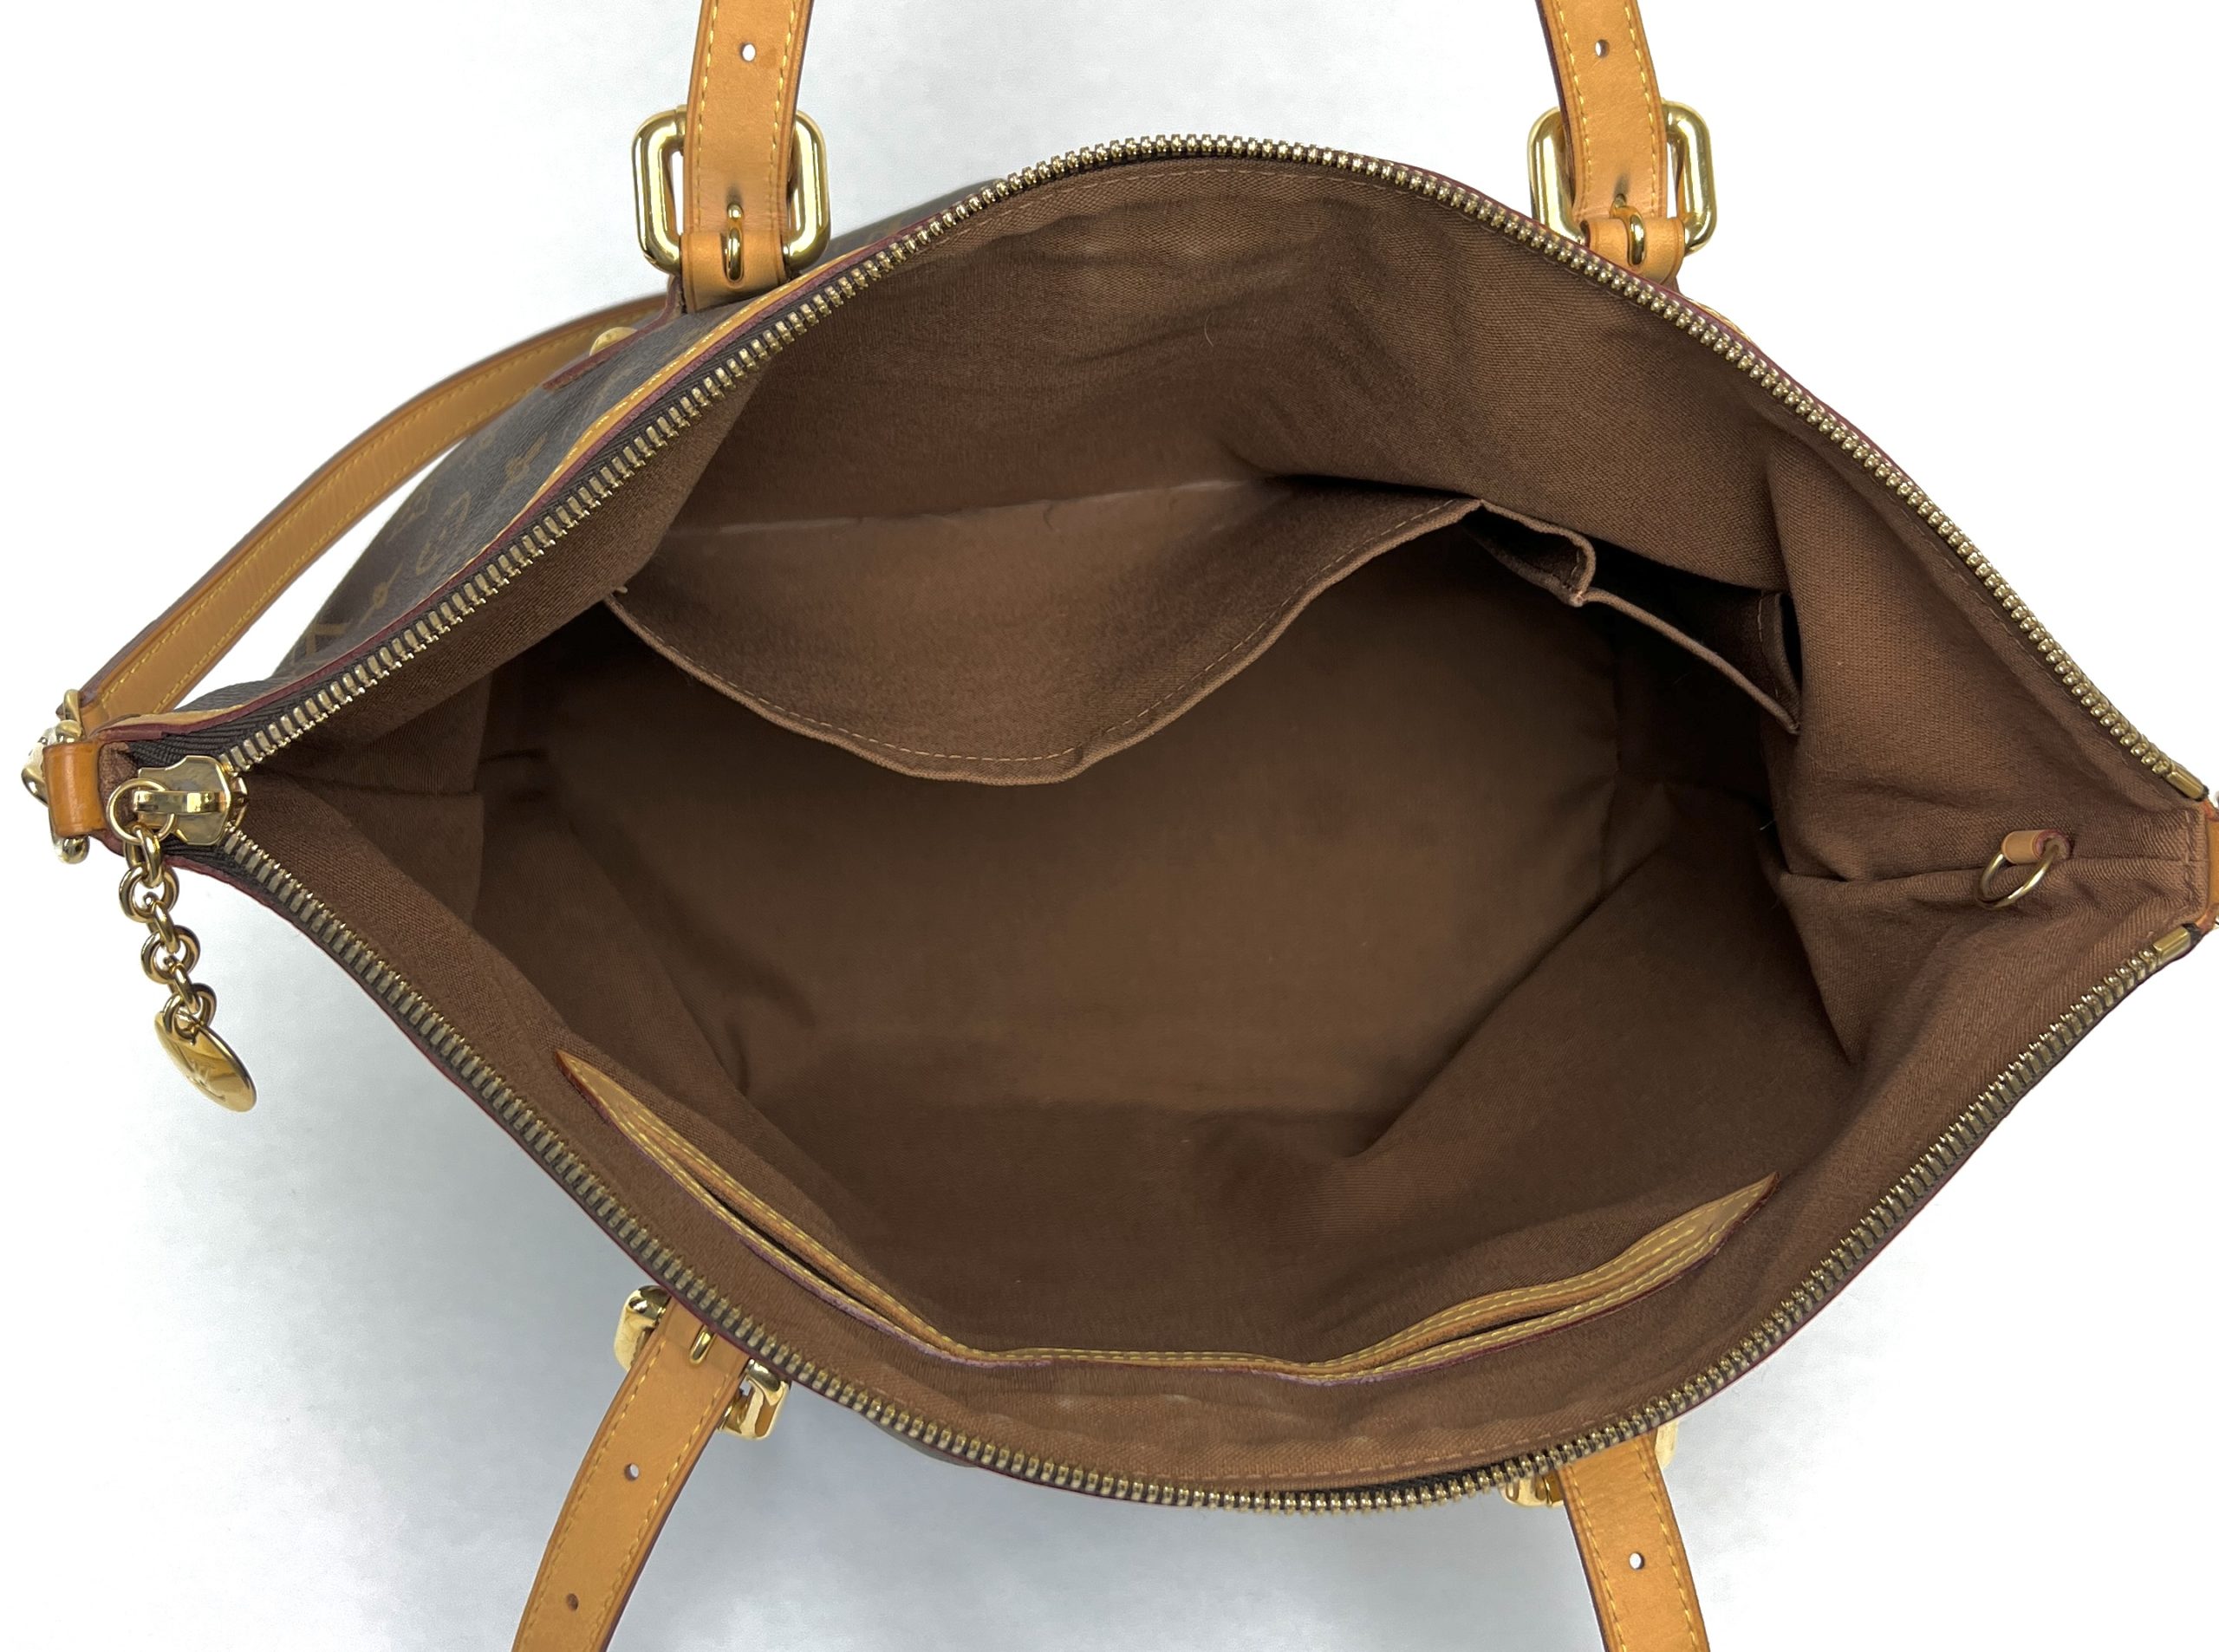 Louis Vuitton tote bag REVIEW 2021 #LVBAG mezzo 